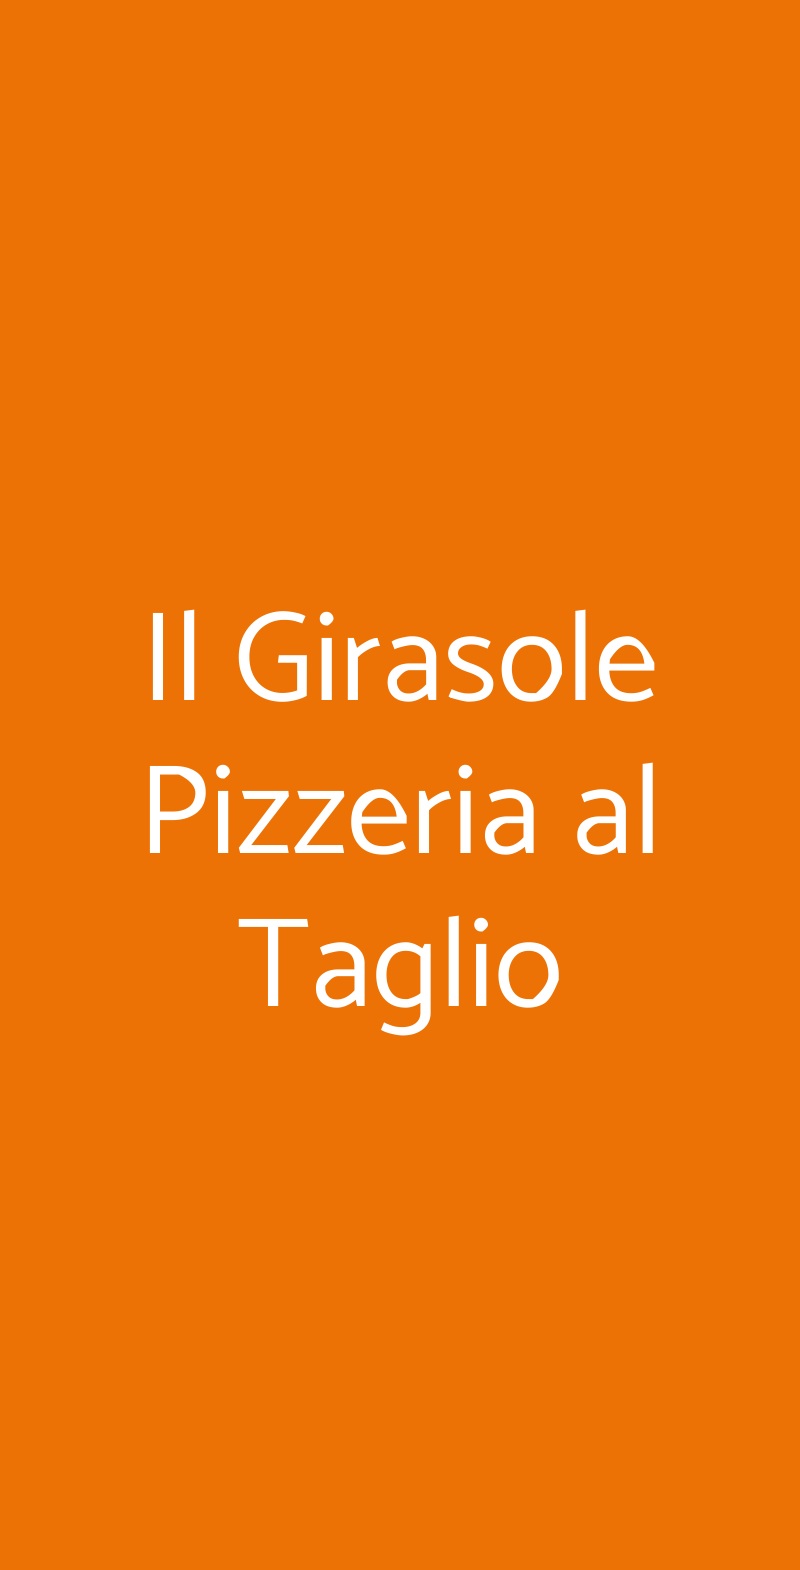 Il Girasole Pizzeria al Taglio Verona menù 1 pagina